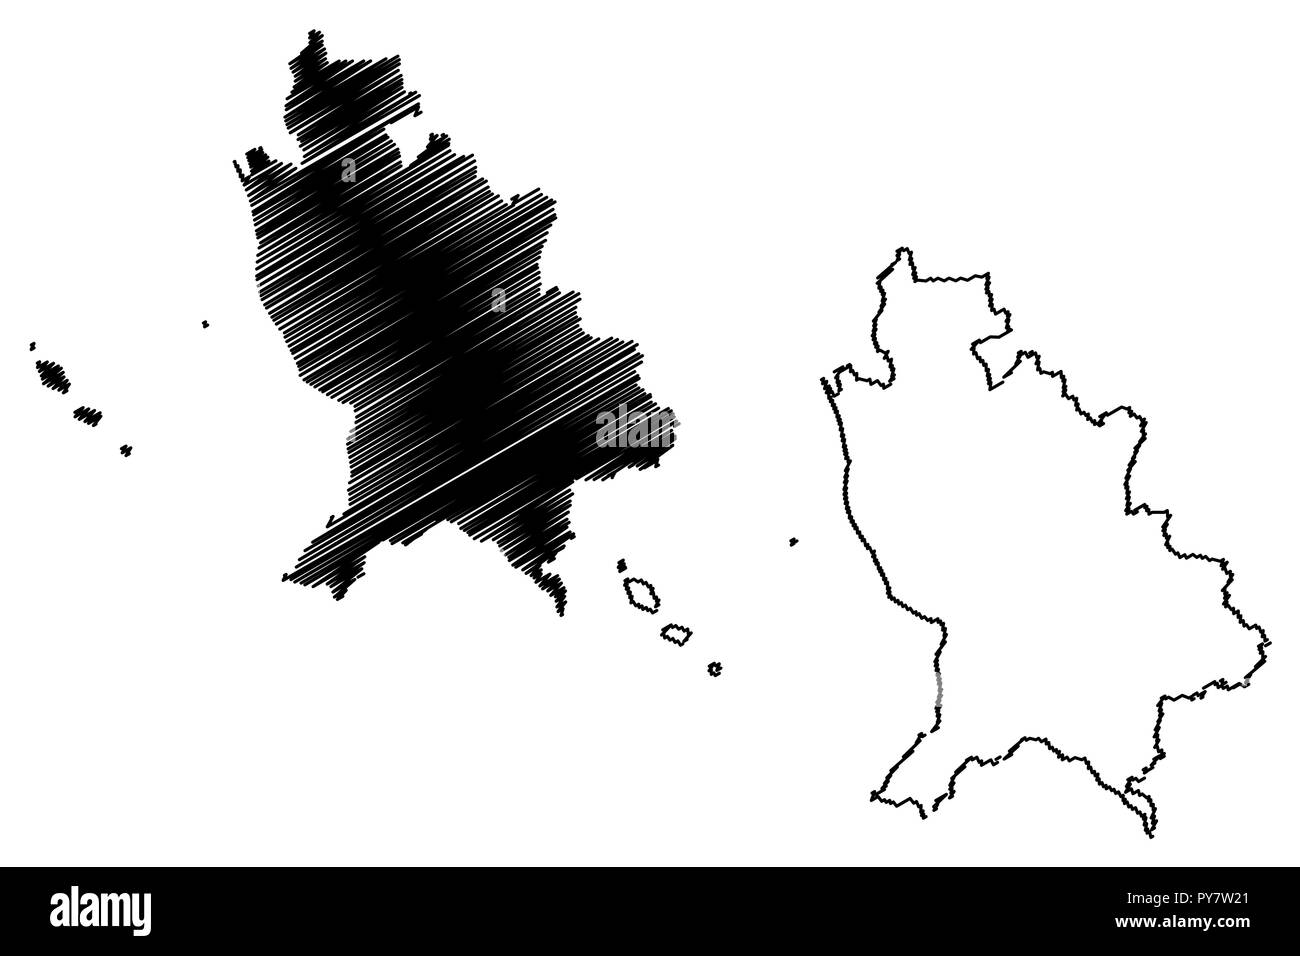 Nayarit (Vereinigte mexikanische Staaten, Mexiko, Bundesrepublik) Karte Vektor-illustration, kritzeln Skizze freier und souveräner Staat von Nayarit (Insel Marías Stock Vektor